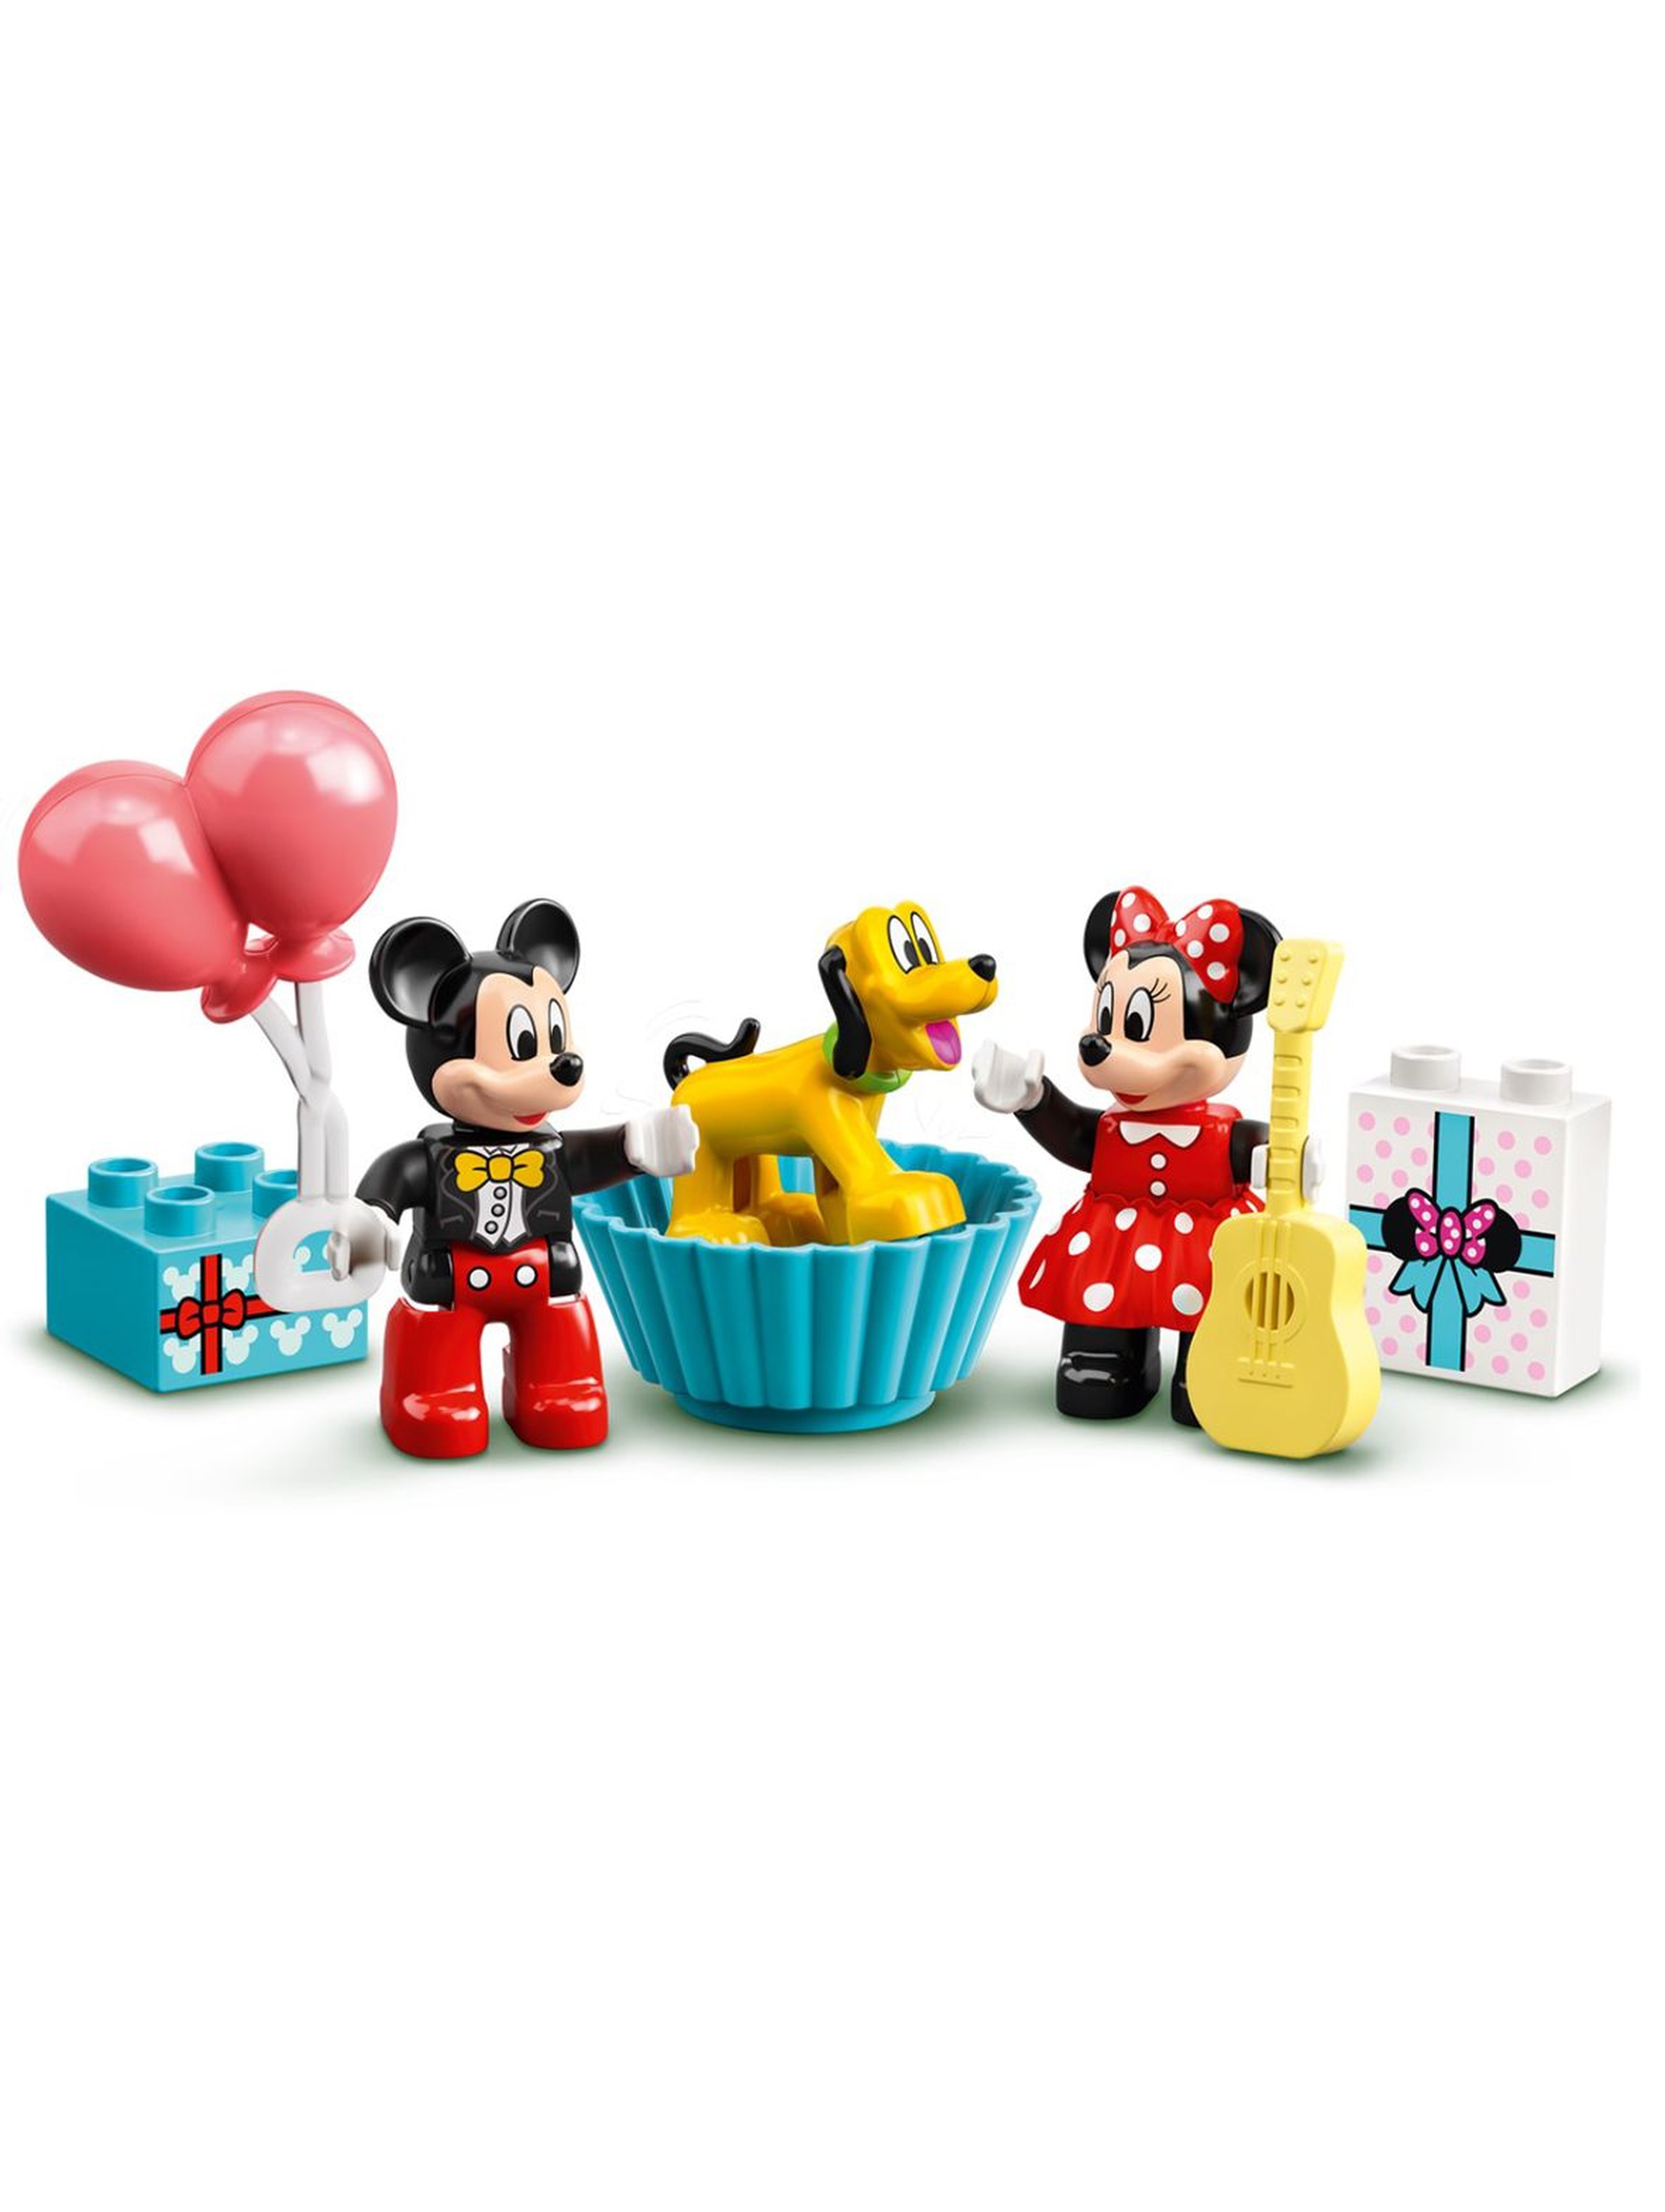 Lego DUPLO 10941 - Urodzinowy pociąg myszek Miki i Minnie - 22 elementy wiek 2+